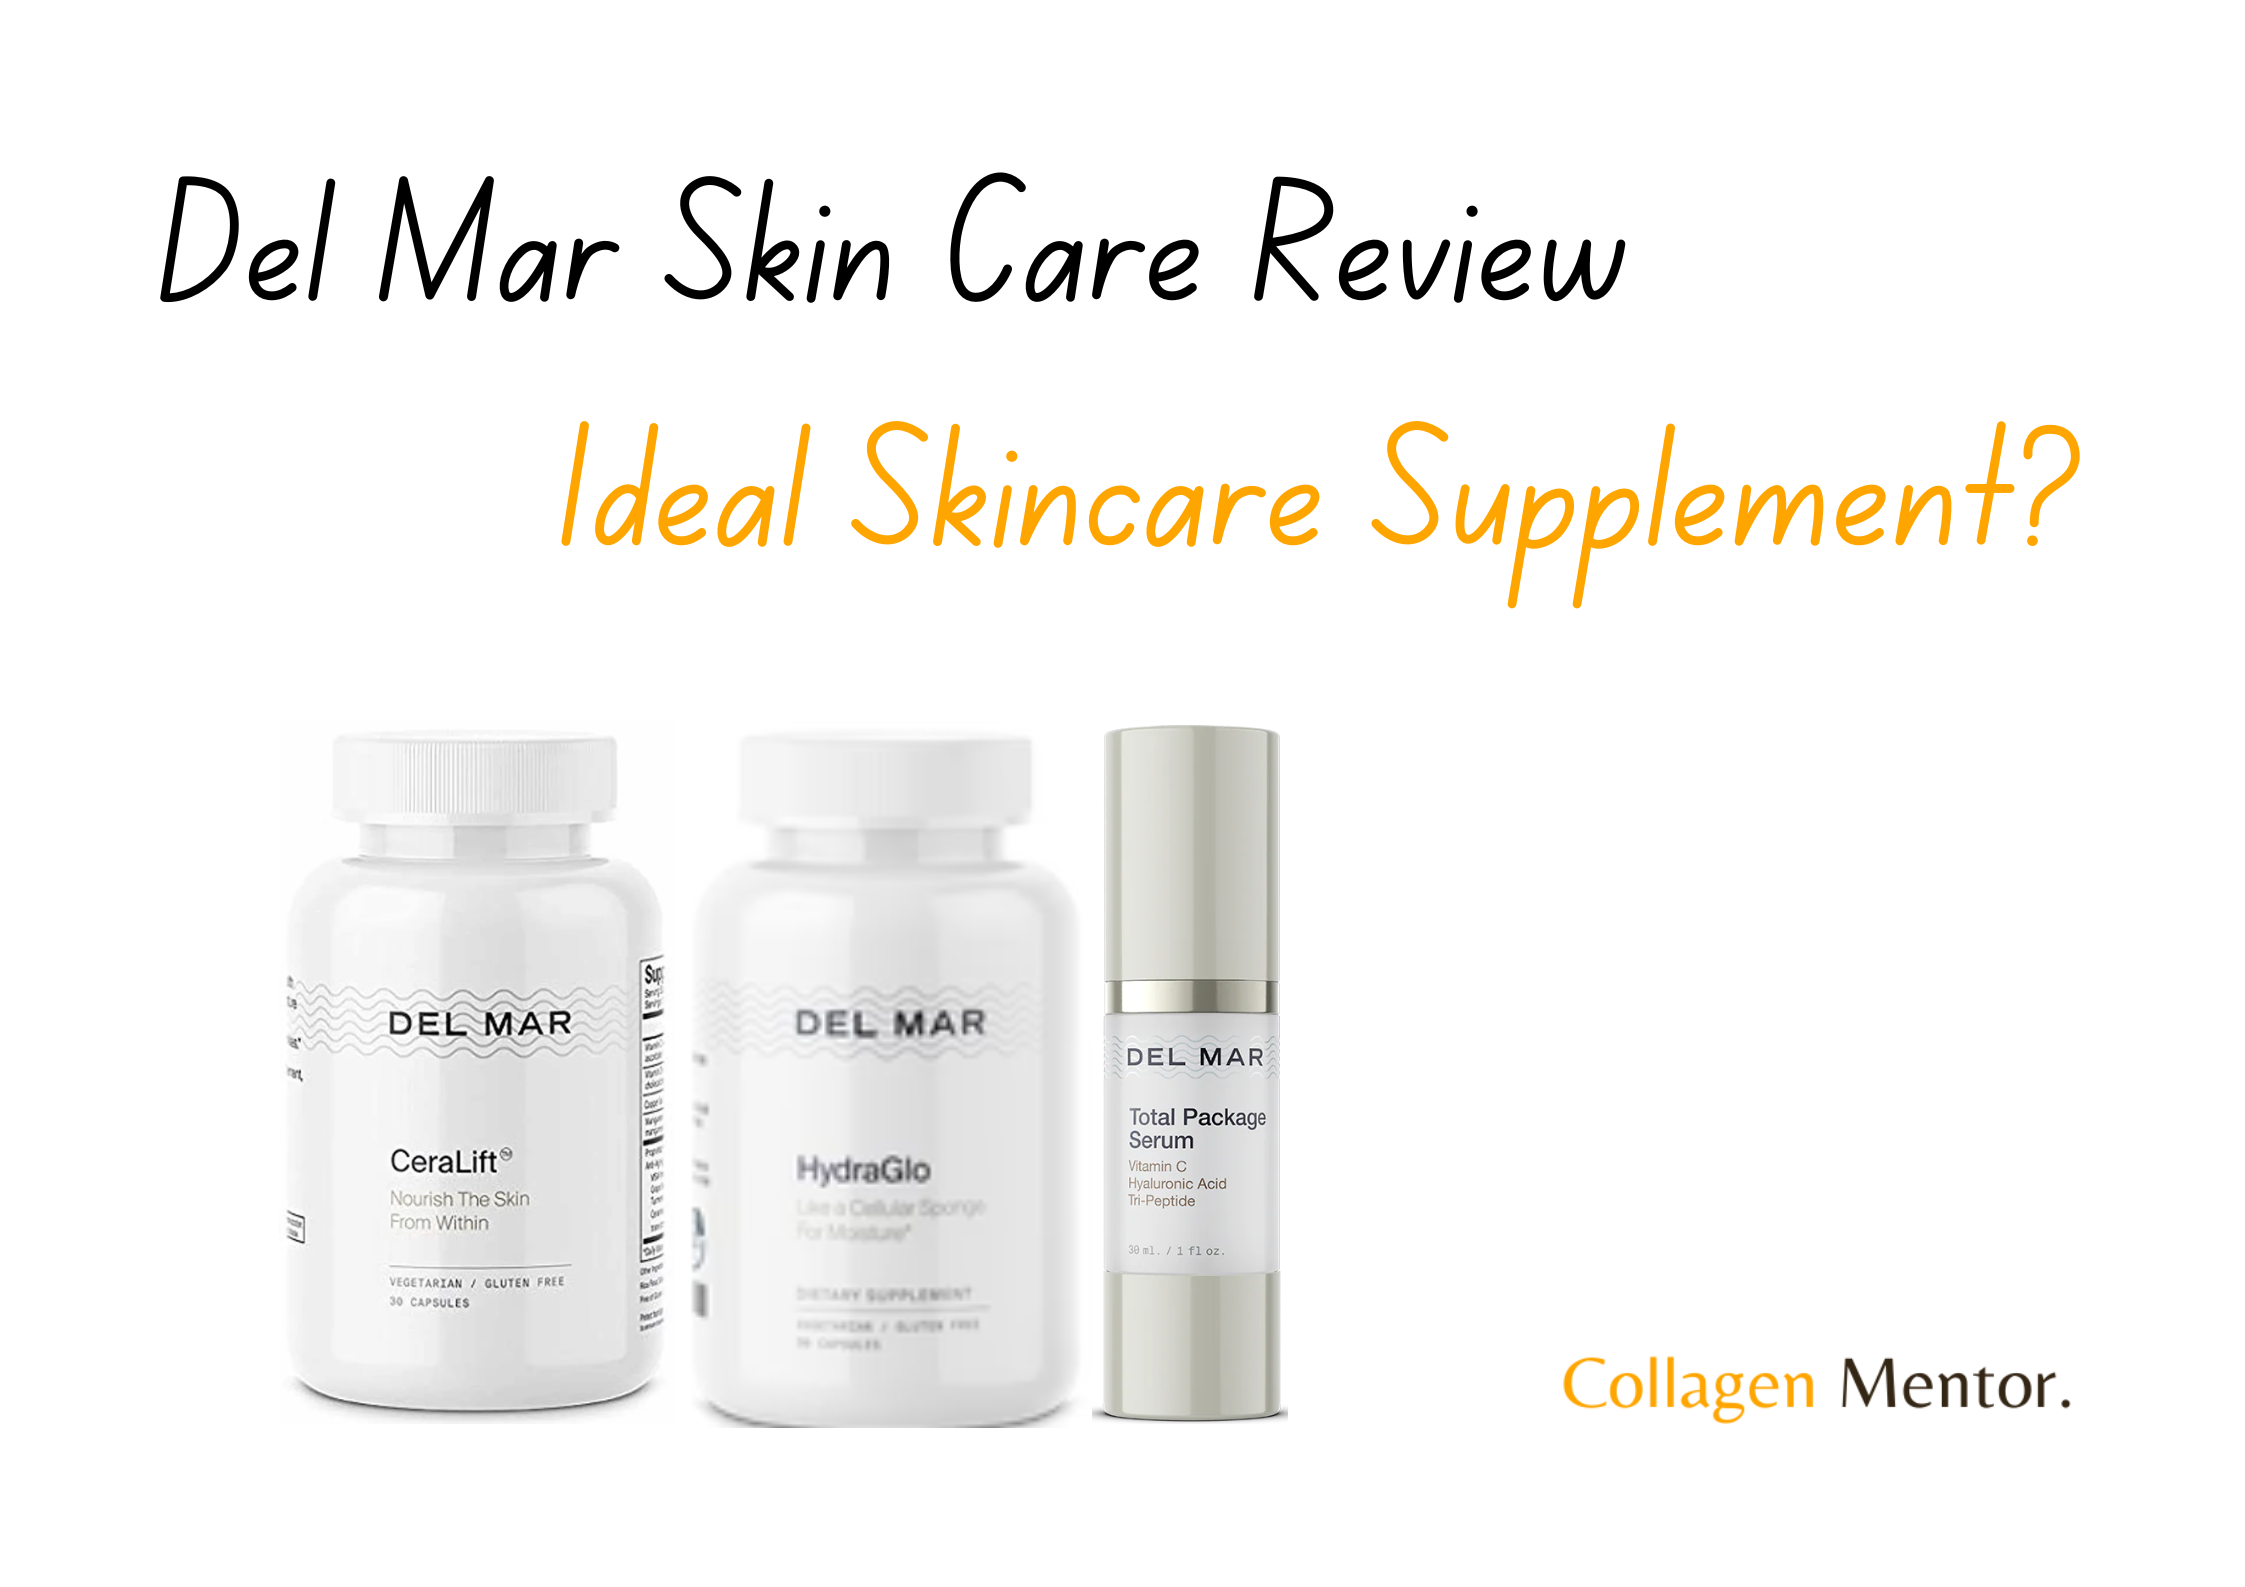 Del Mar Skin Care Reviews